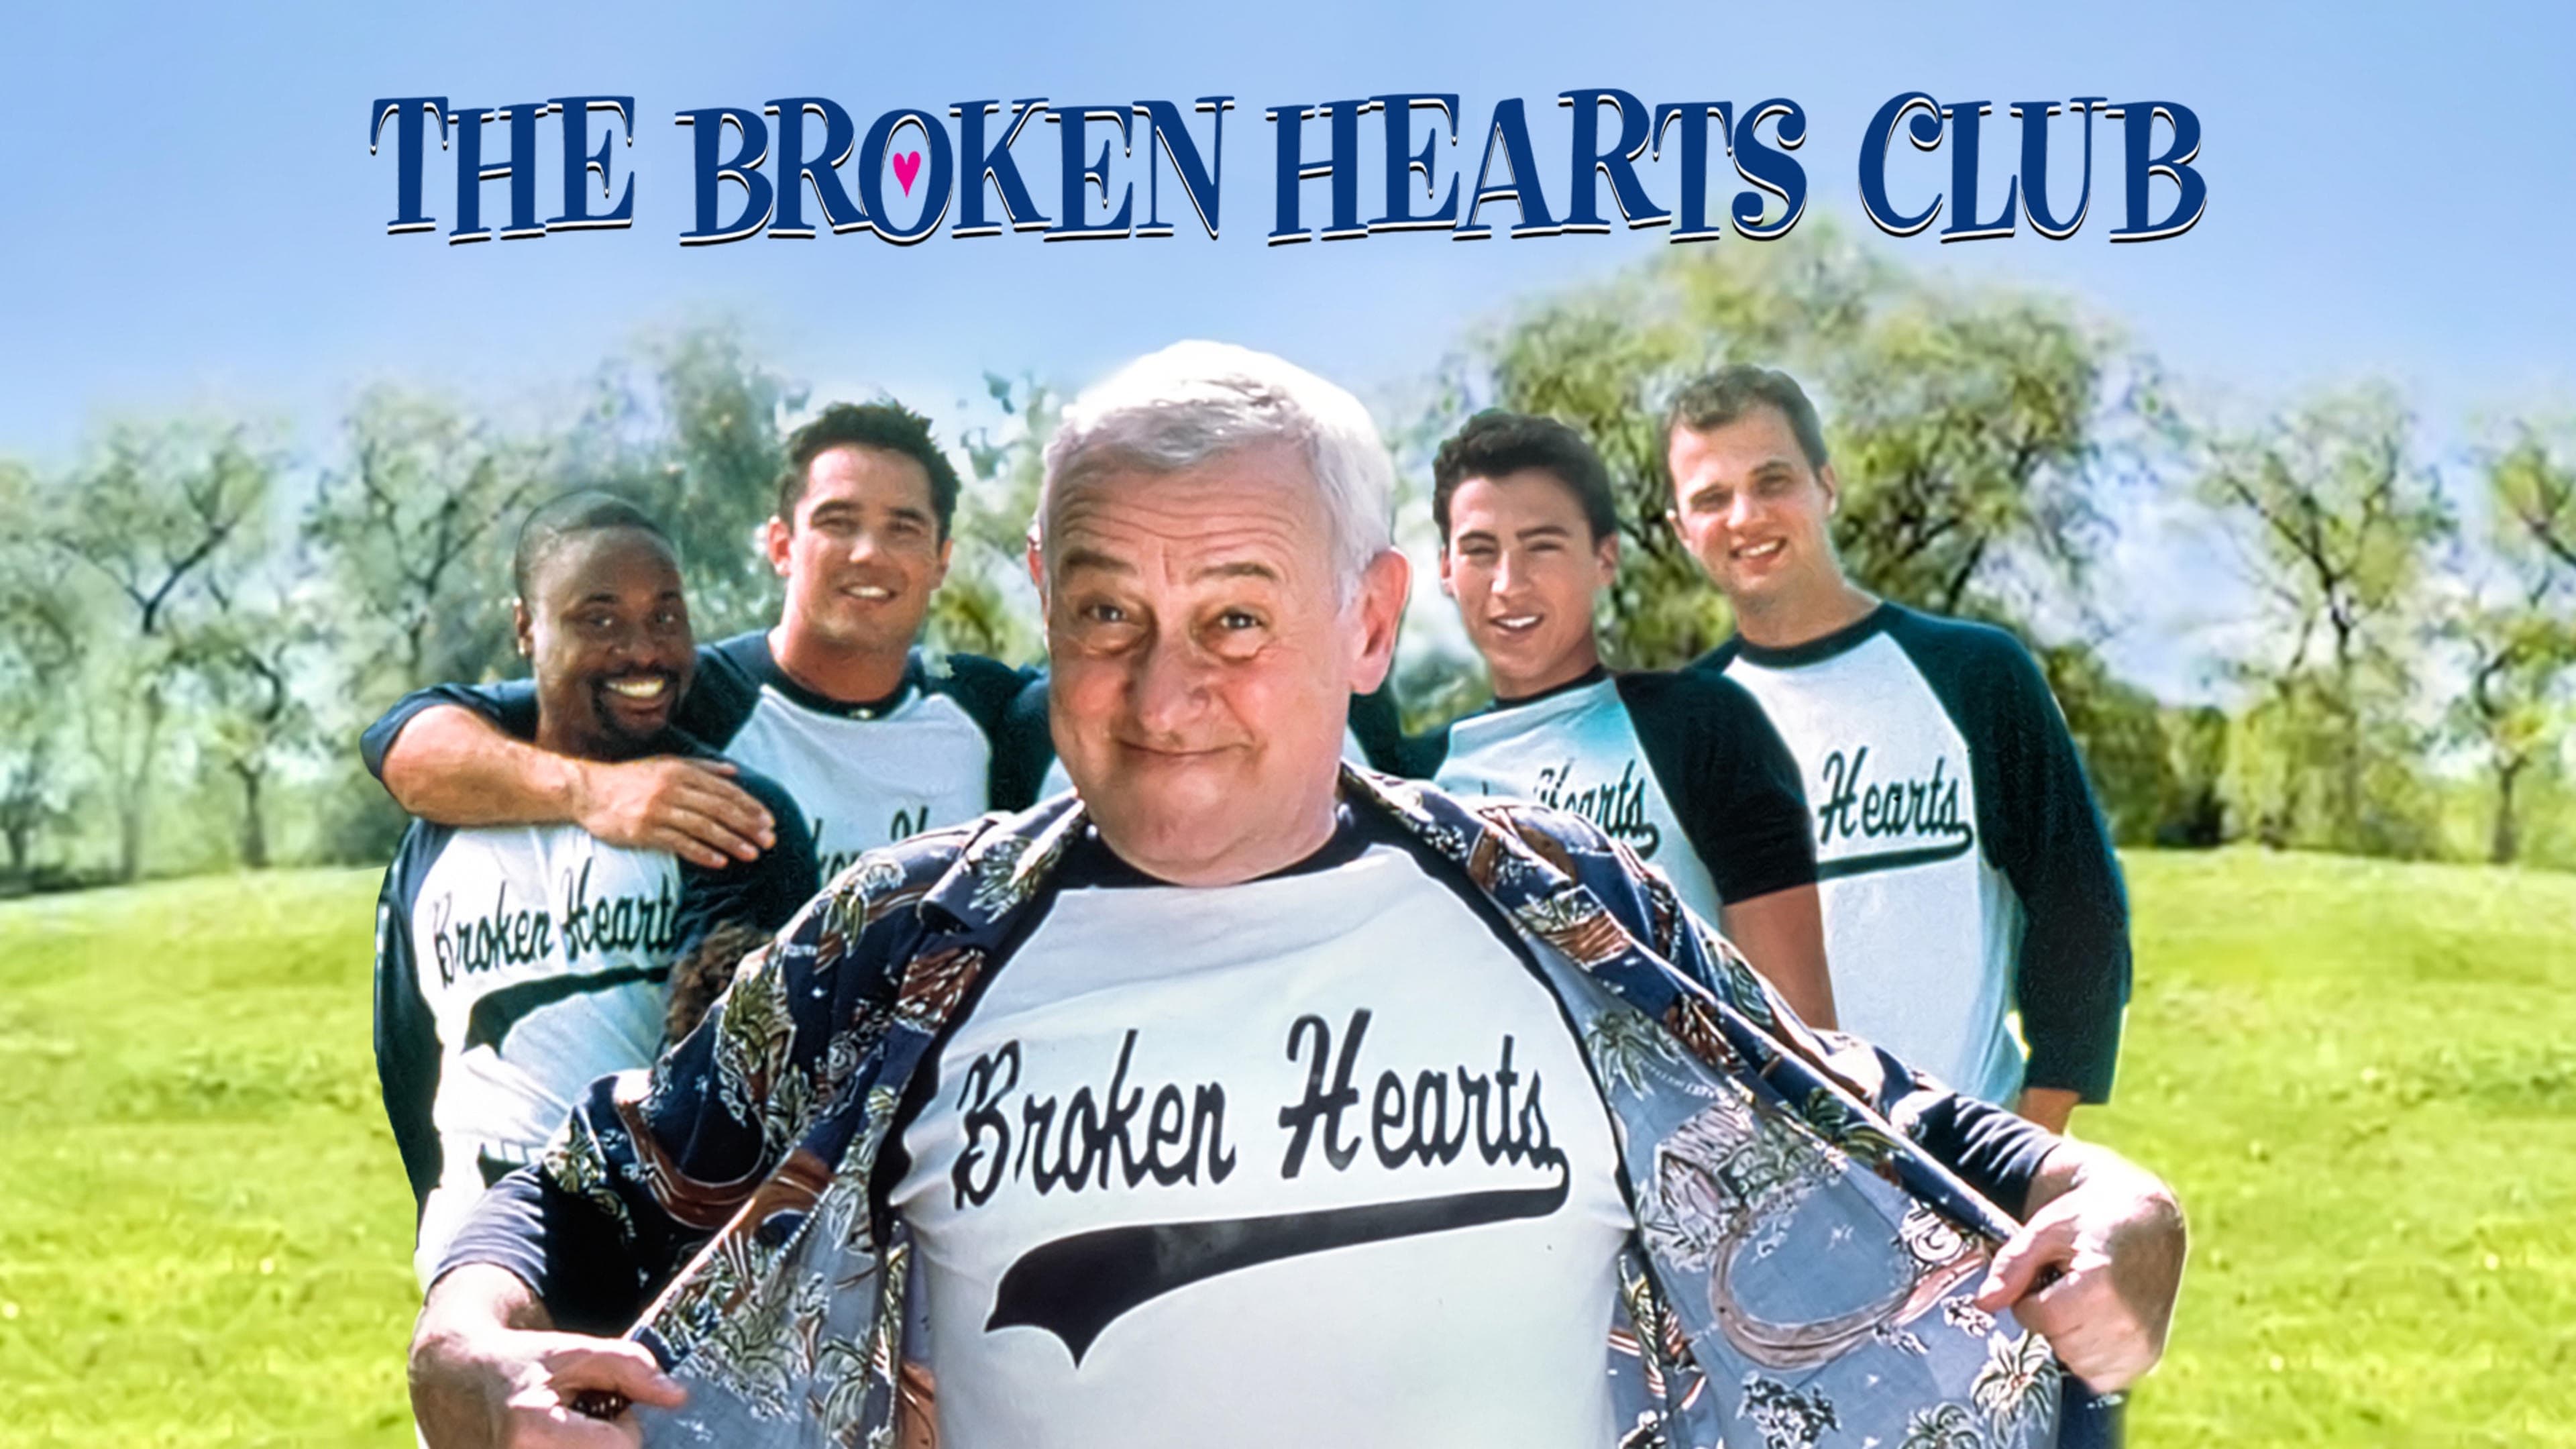 Der Club der gebrochenen Herzen - Eine romantische Komödie